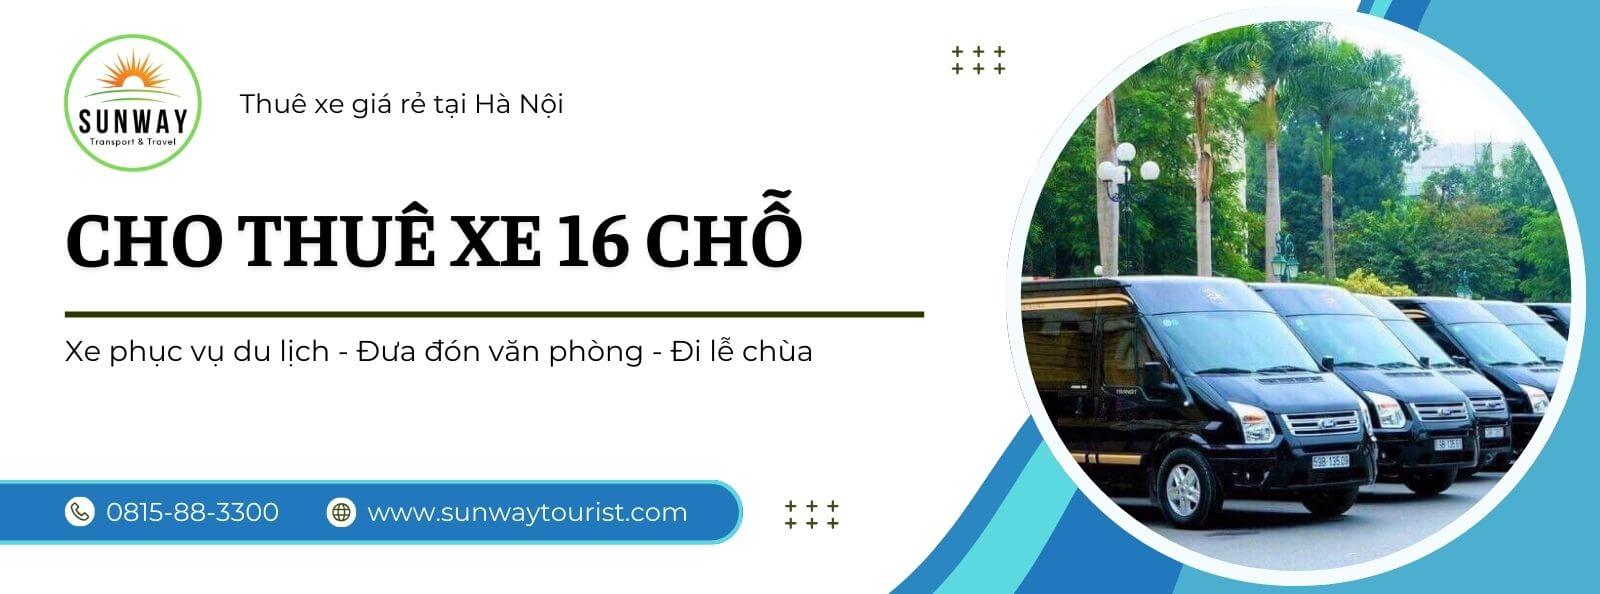 Cho thuê xe 16 chỗ tại Hà Nội